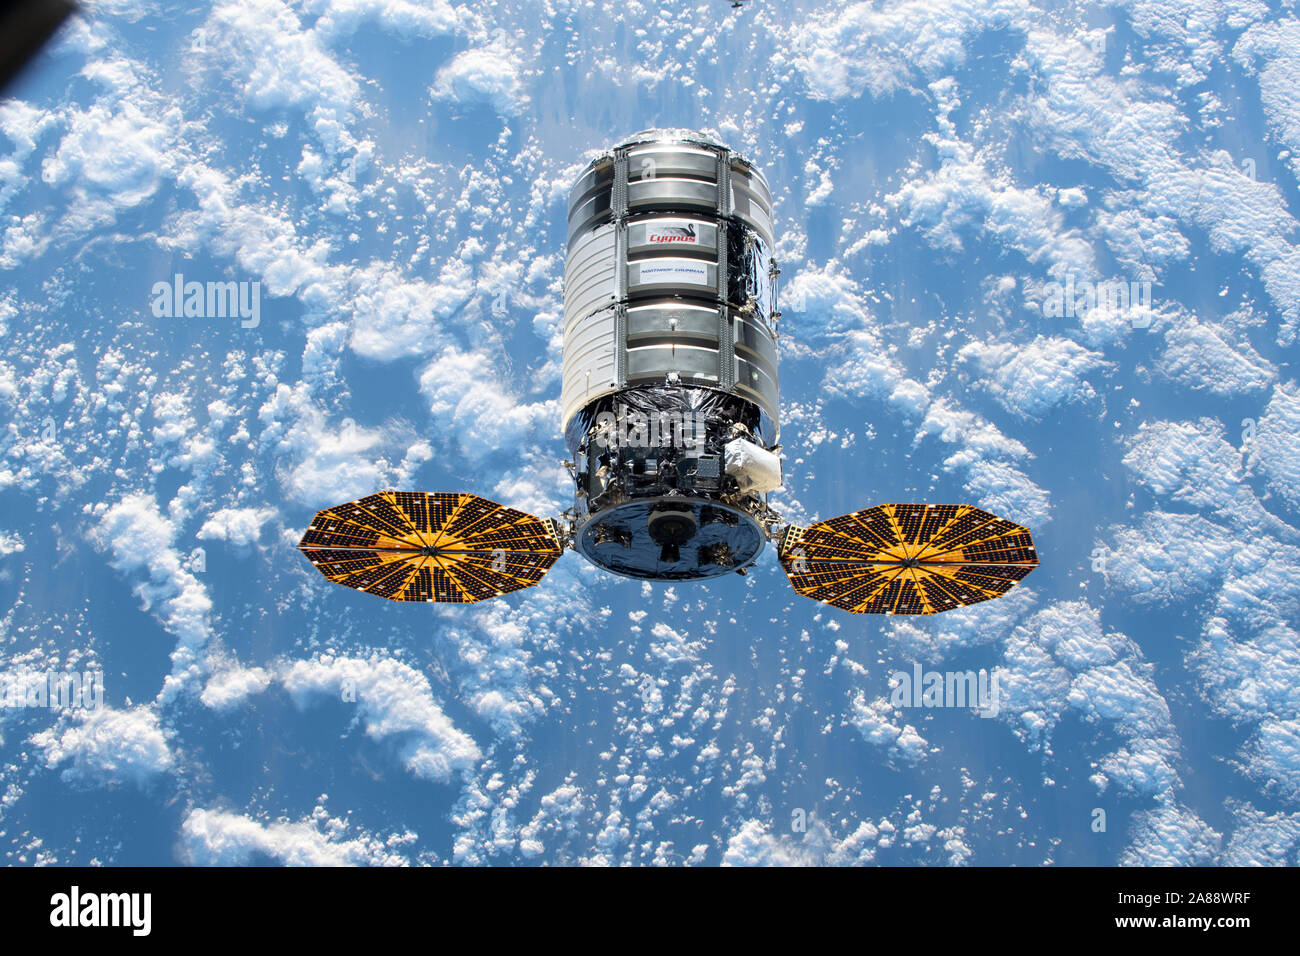 Le cargo spatial Cygnus Northrop Grumman approches à quai à la Station spatiale internationale le 4 novembre 2019 dans l'orbite de la Terre. C'est le 12e navire de ravitaillement commerciaux de Northrop Grumman pour livrer la cargaison à la Station spatiale internationale. Banque D'Images